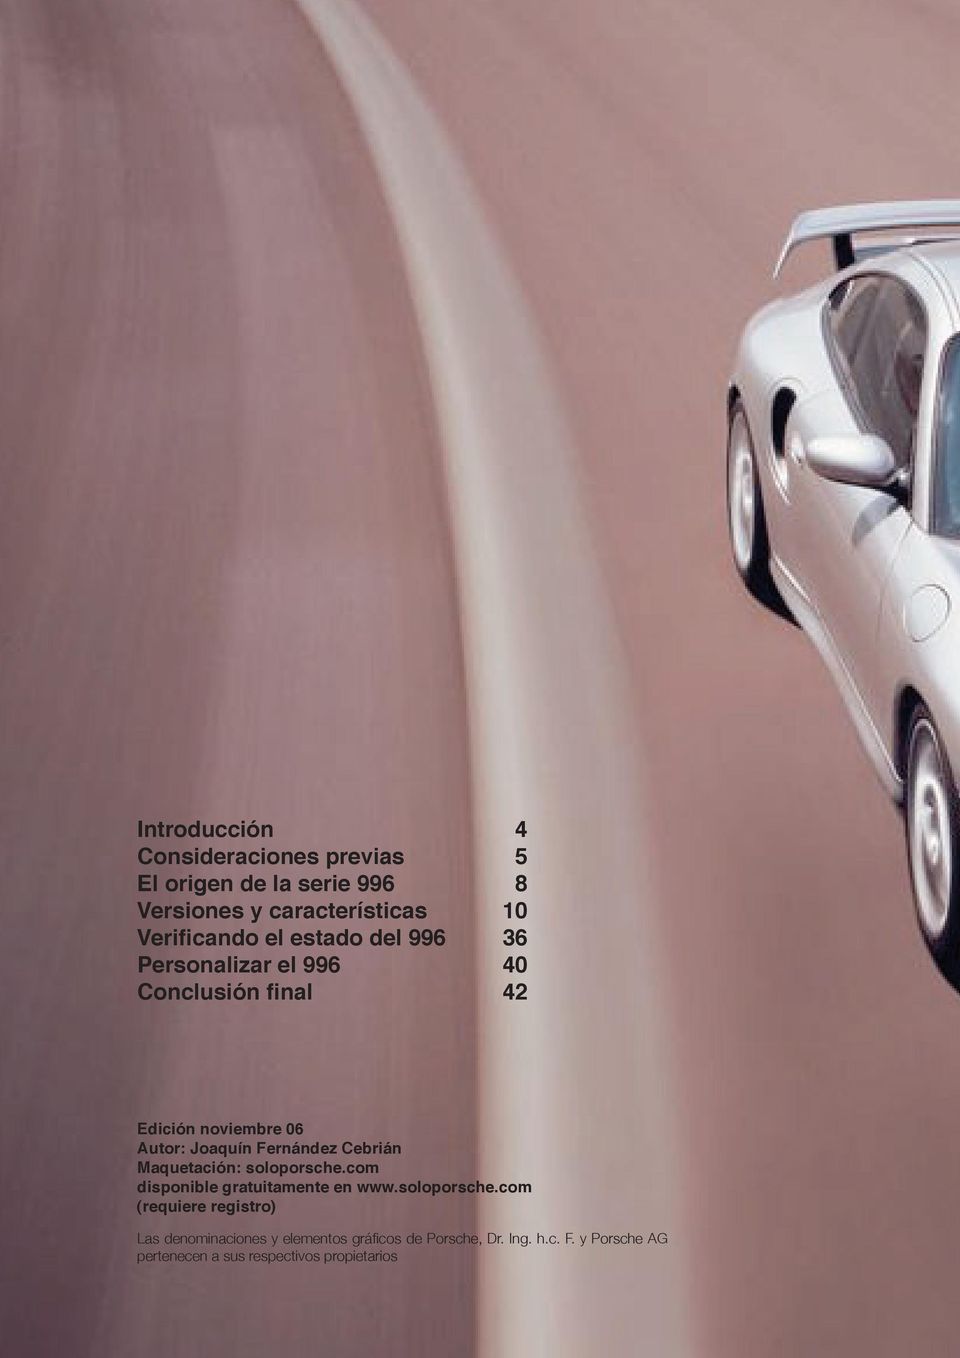 Cebrián Maquetación: soloporsche.com disponible gratuitamente en www.soloporsche.com (requiere registro) Las denominaciones y elementos gráficos de Porsche, Dr.